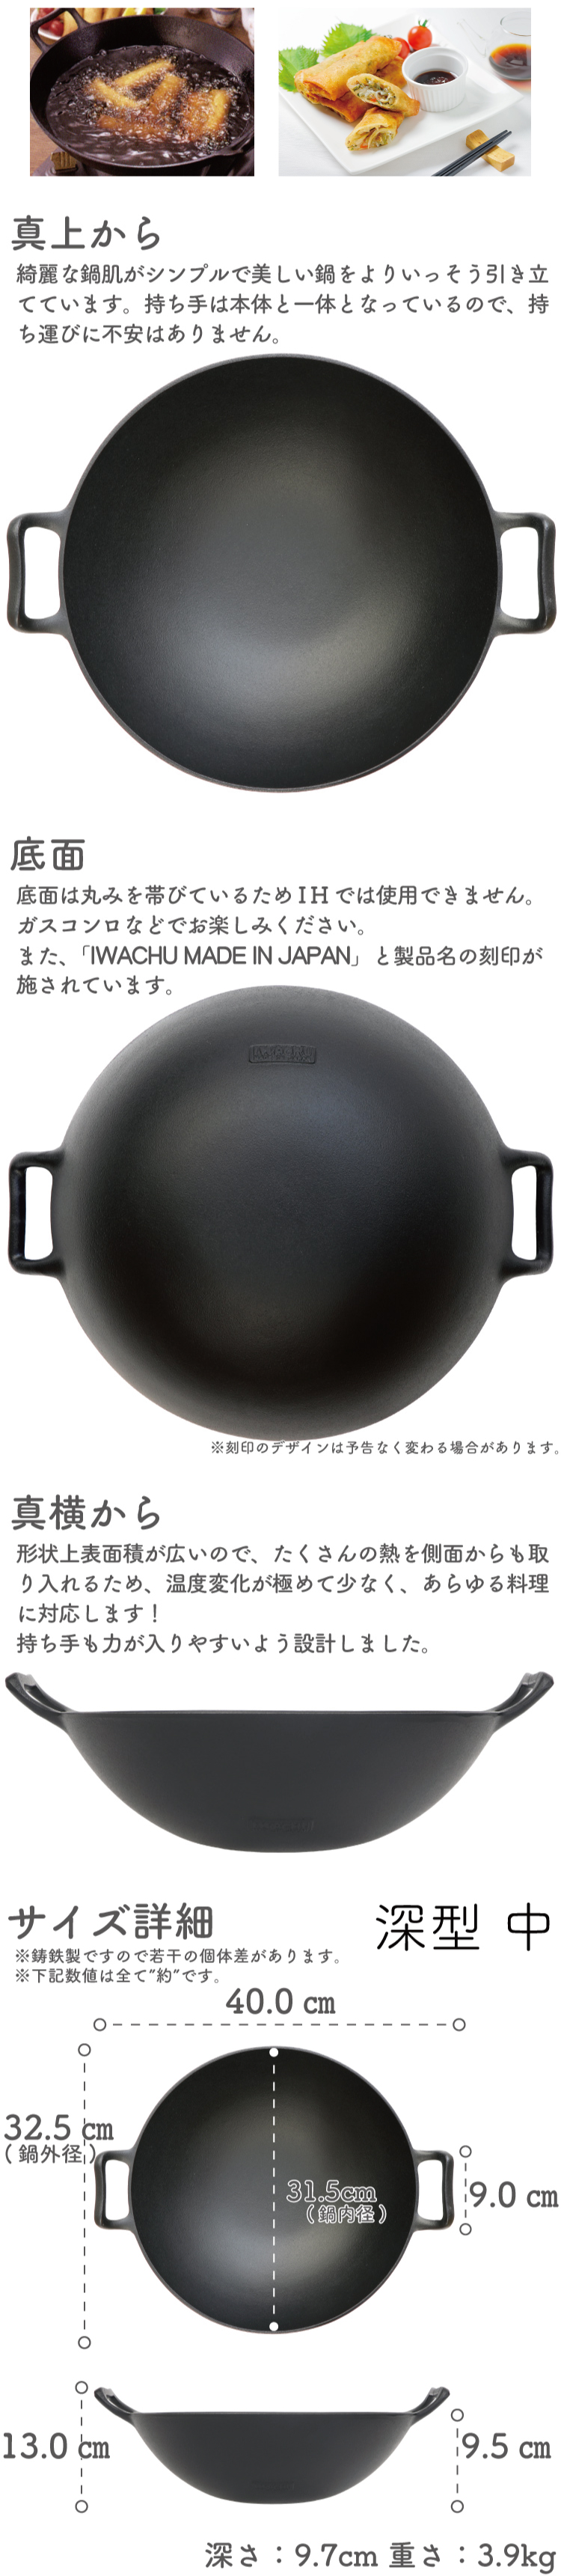 岩鋳 Iwachu 中華鍋 深型(中) 黒 内径31.5cm 直火用 南部鉄器 21052